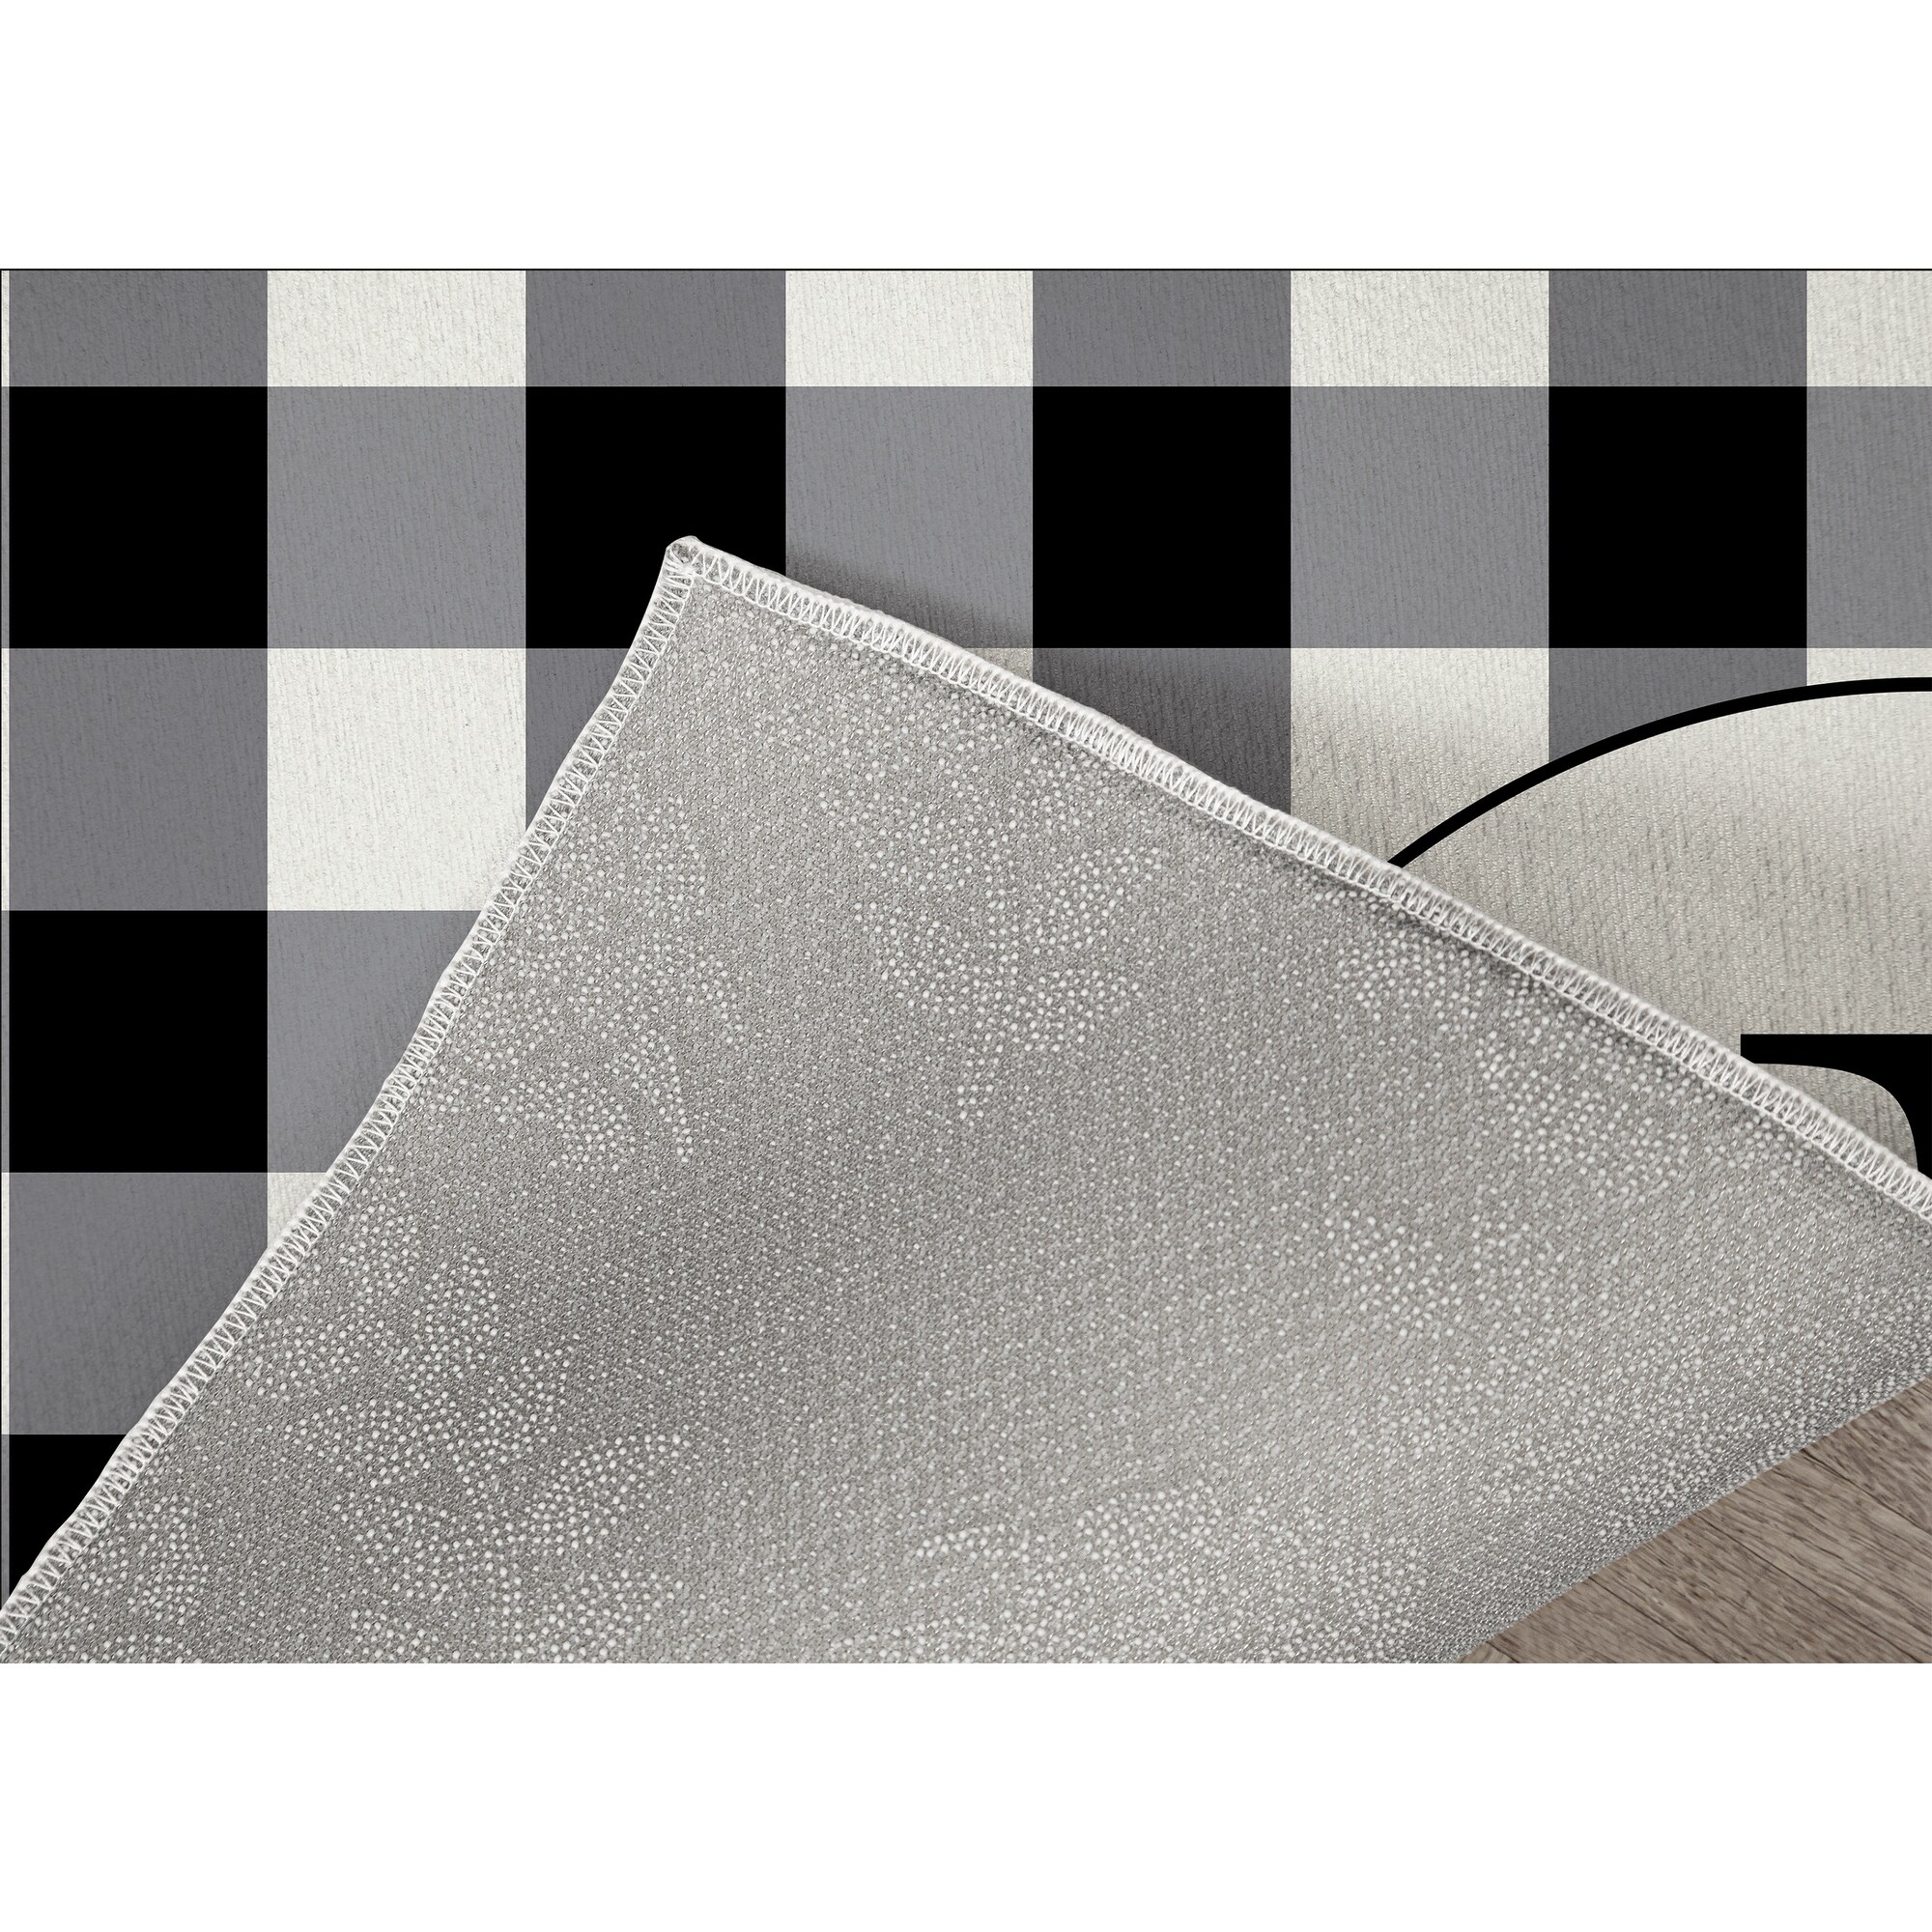 MONO BLACK & WHITE J Kitchen Mat By Kavka Designs - Bed Bath